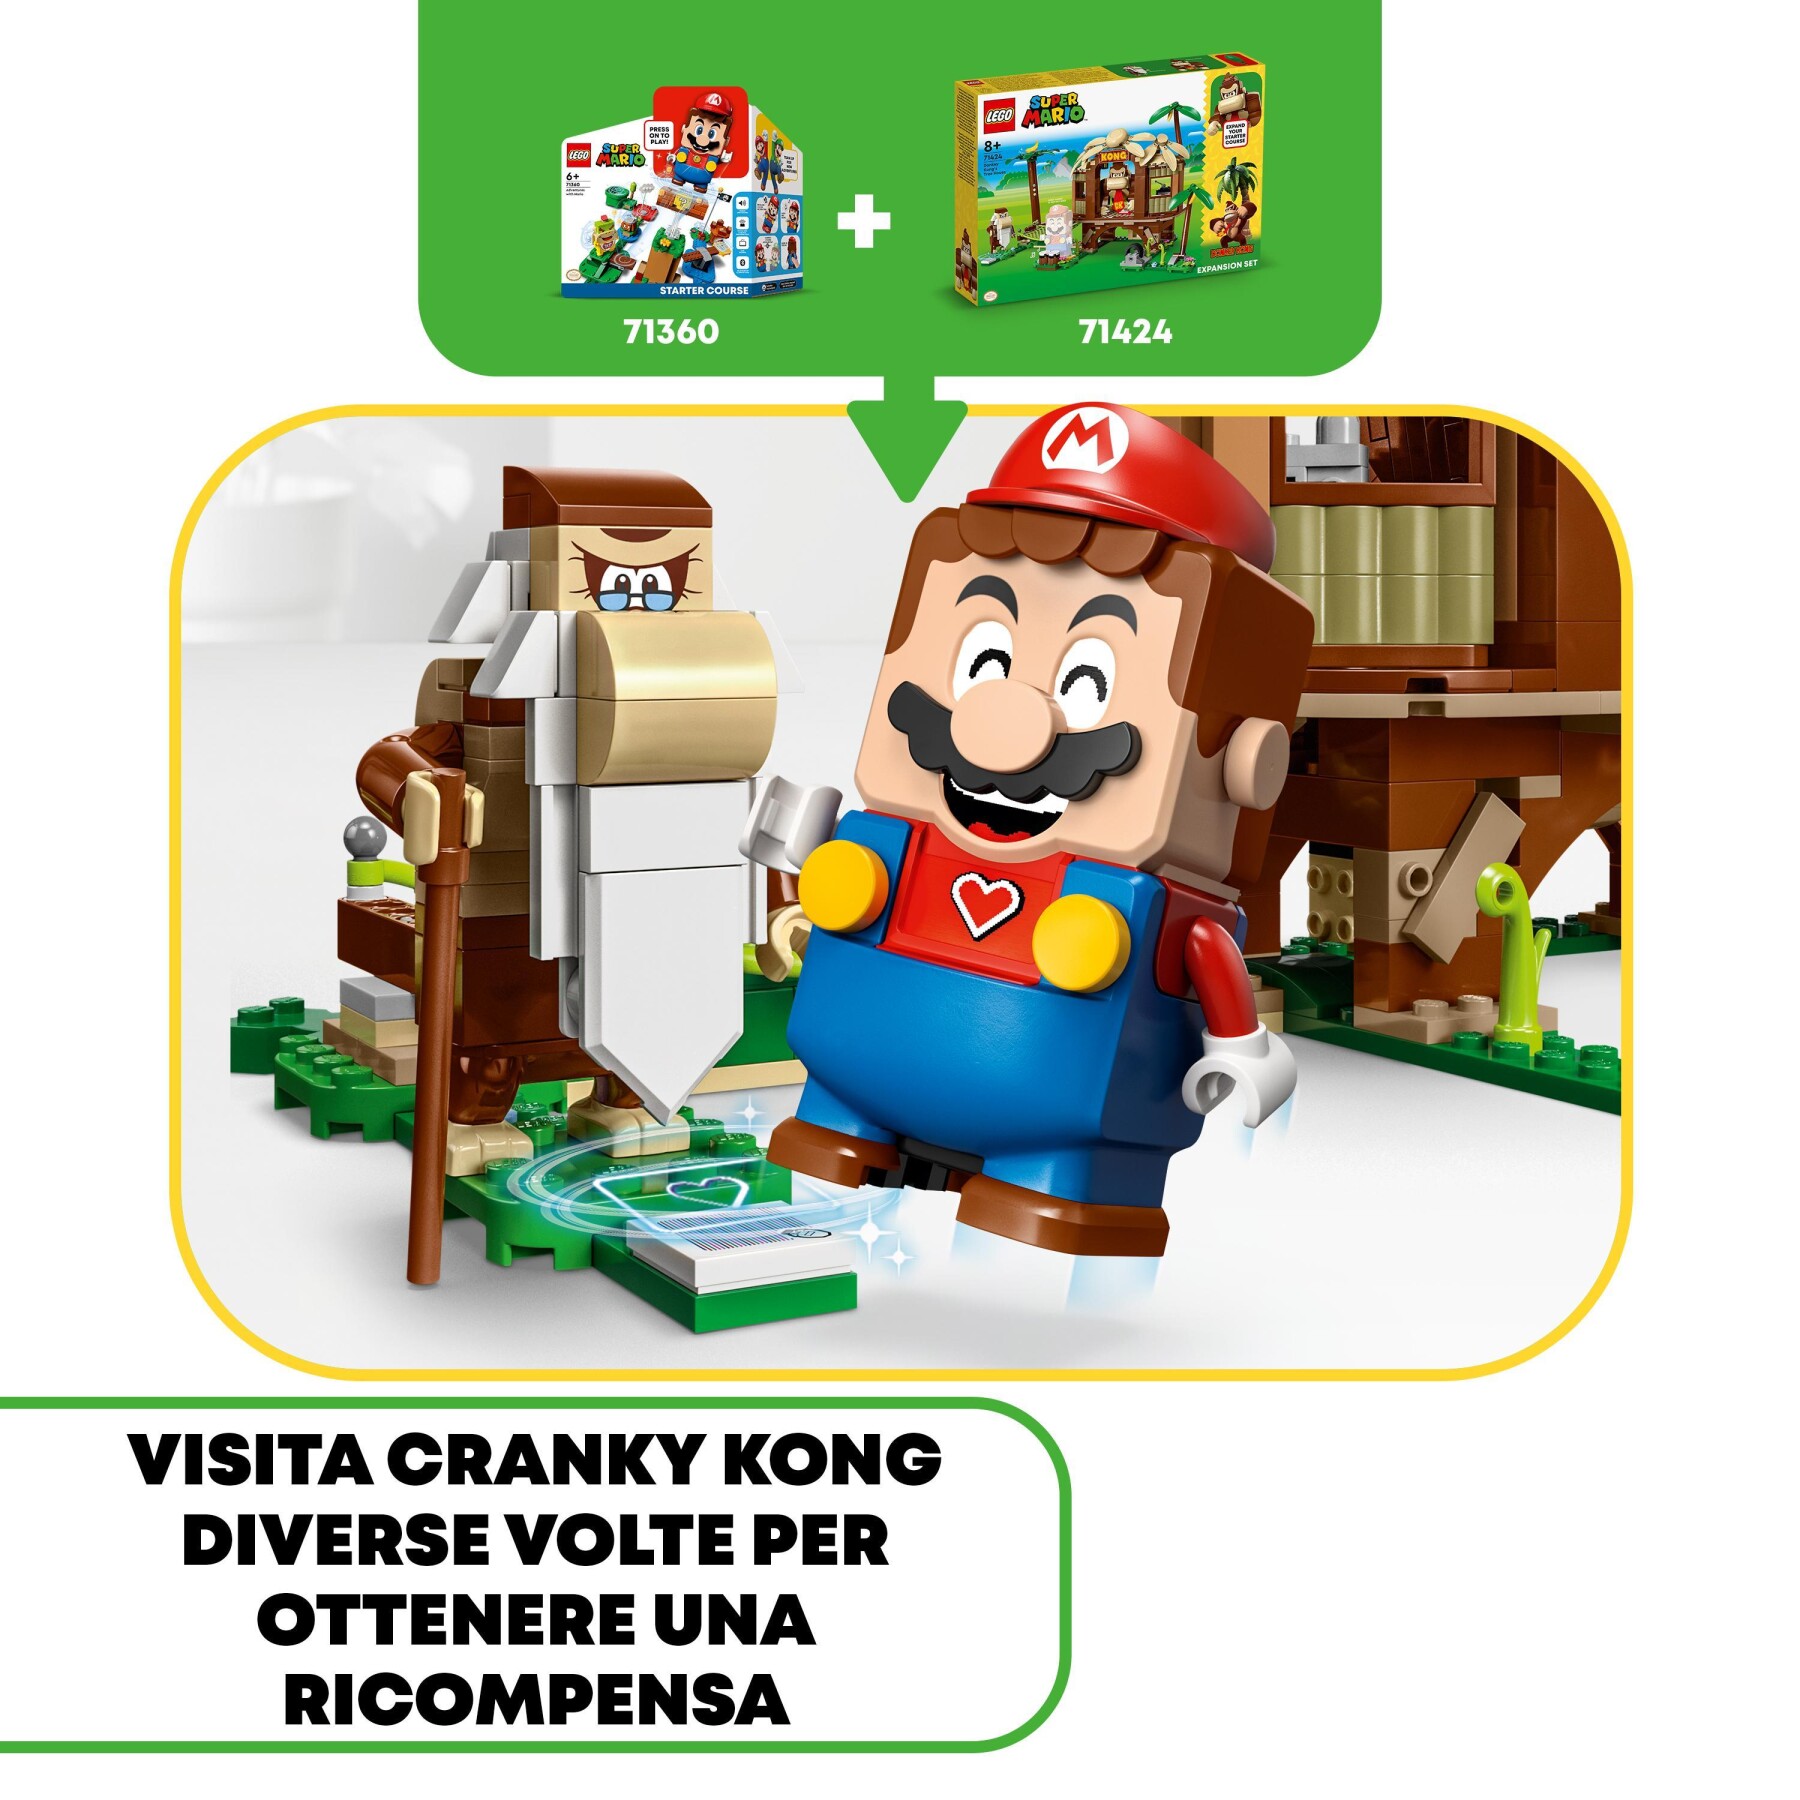 Lego super mario 71424 pack di espansione casa sull'albero di donkey kong, giochi per bambini e bambine 8+ con 2 personaggi - LEGO® Super Mario™, Super Mario